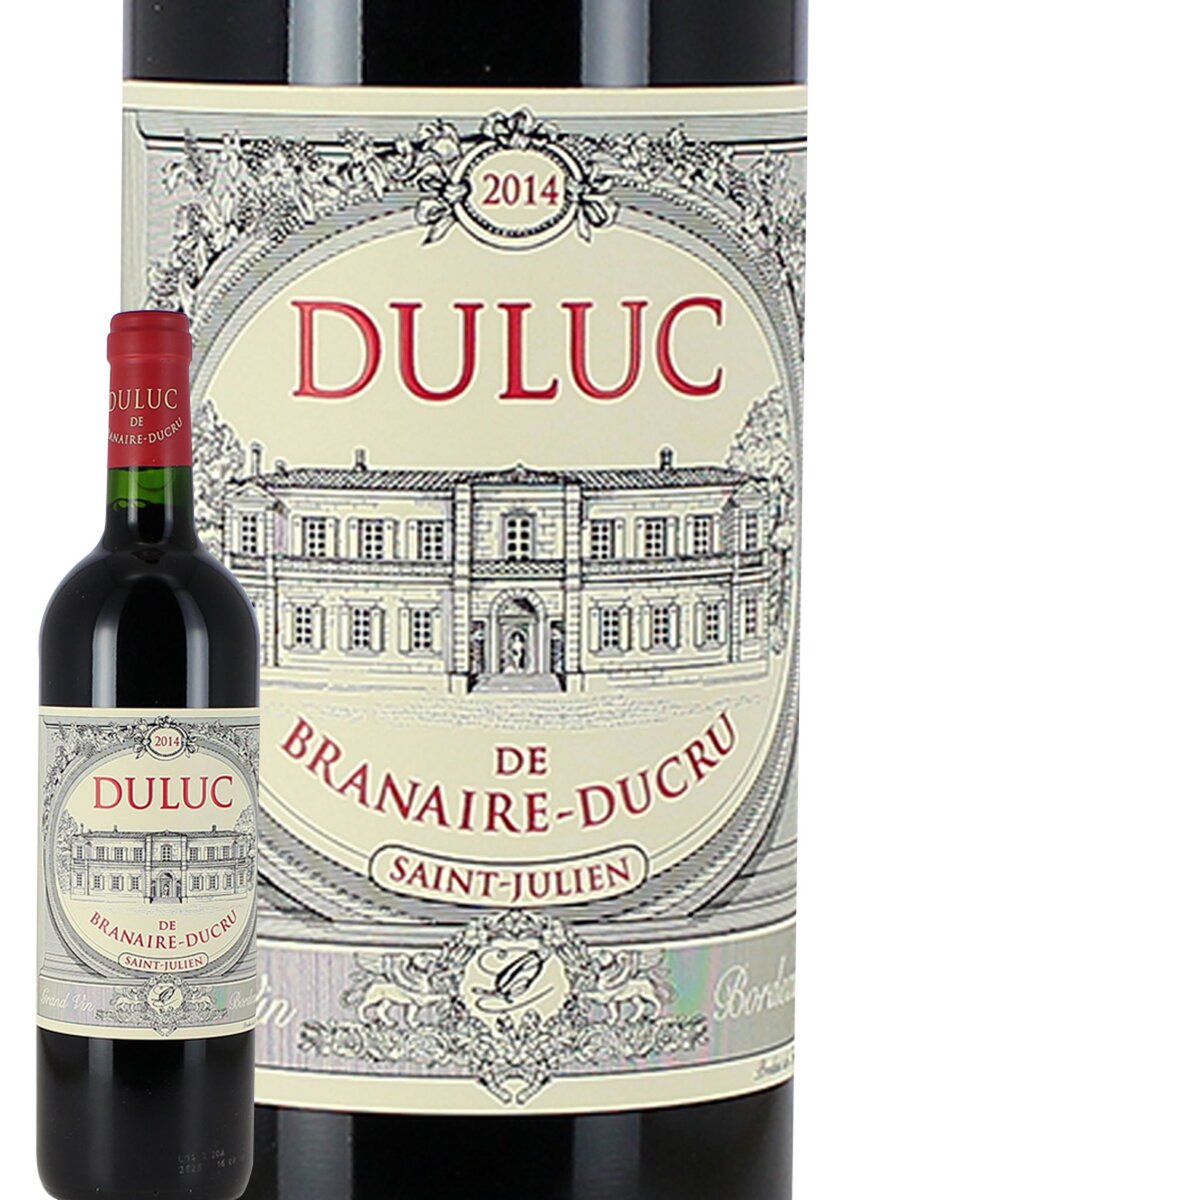 Chateau Duluc de Branaire Ducru Saint julien second vin Bordeaux rouge 2014 75cl